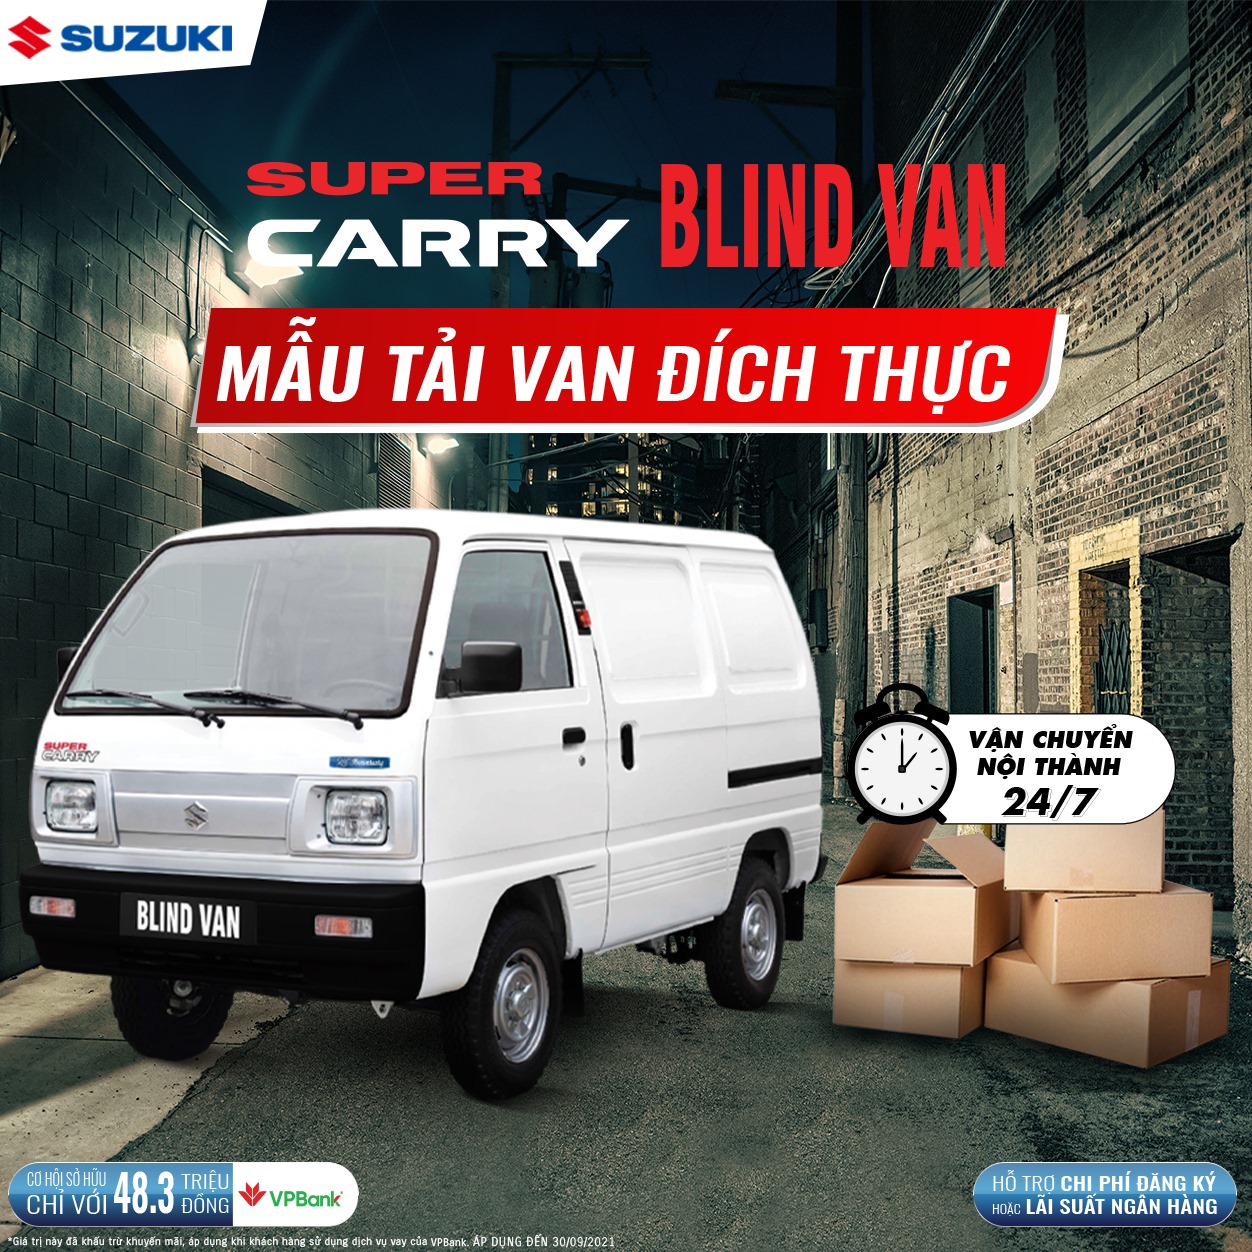 Suzuki Blind Van – Vận chuyển nội thành 24h/7 không lo cấm giờ-0